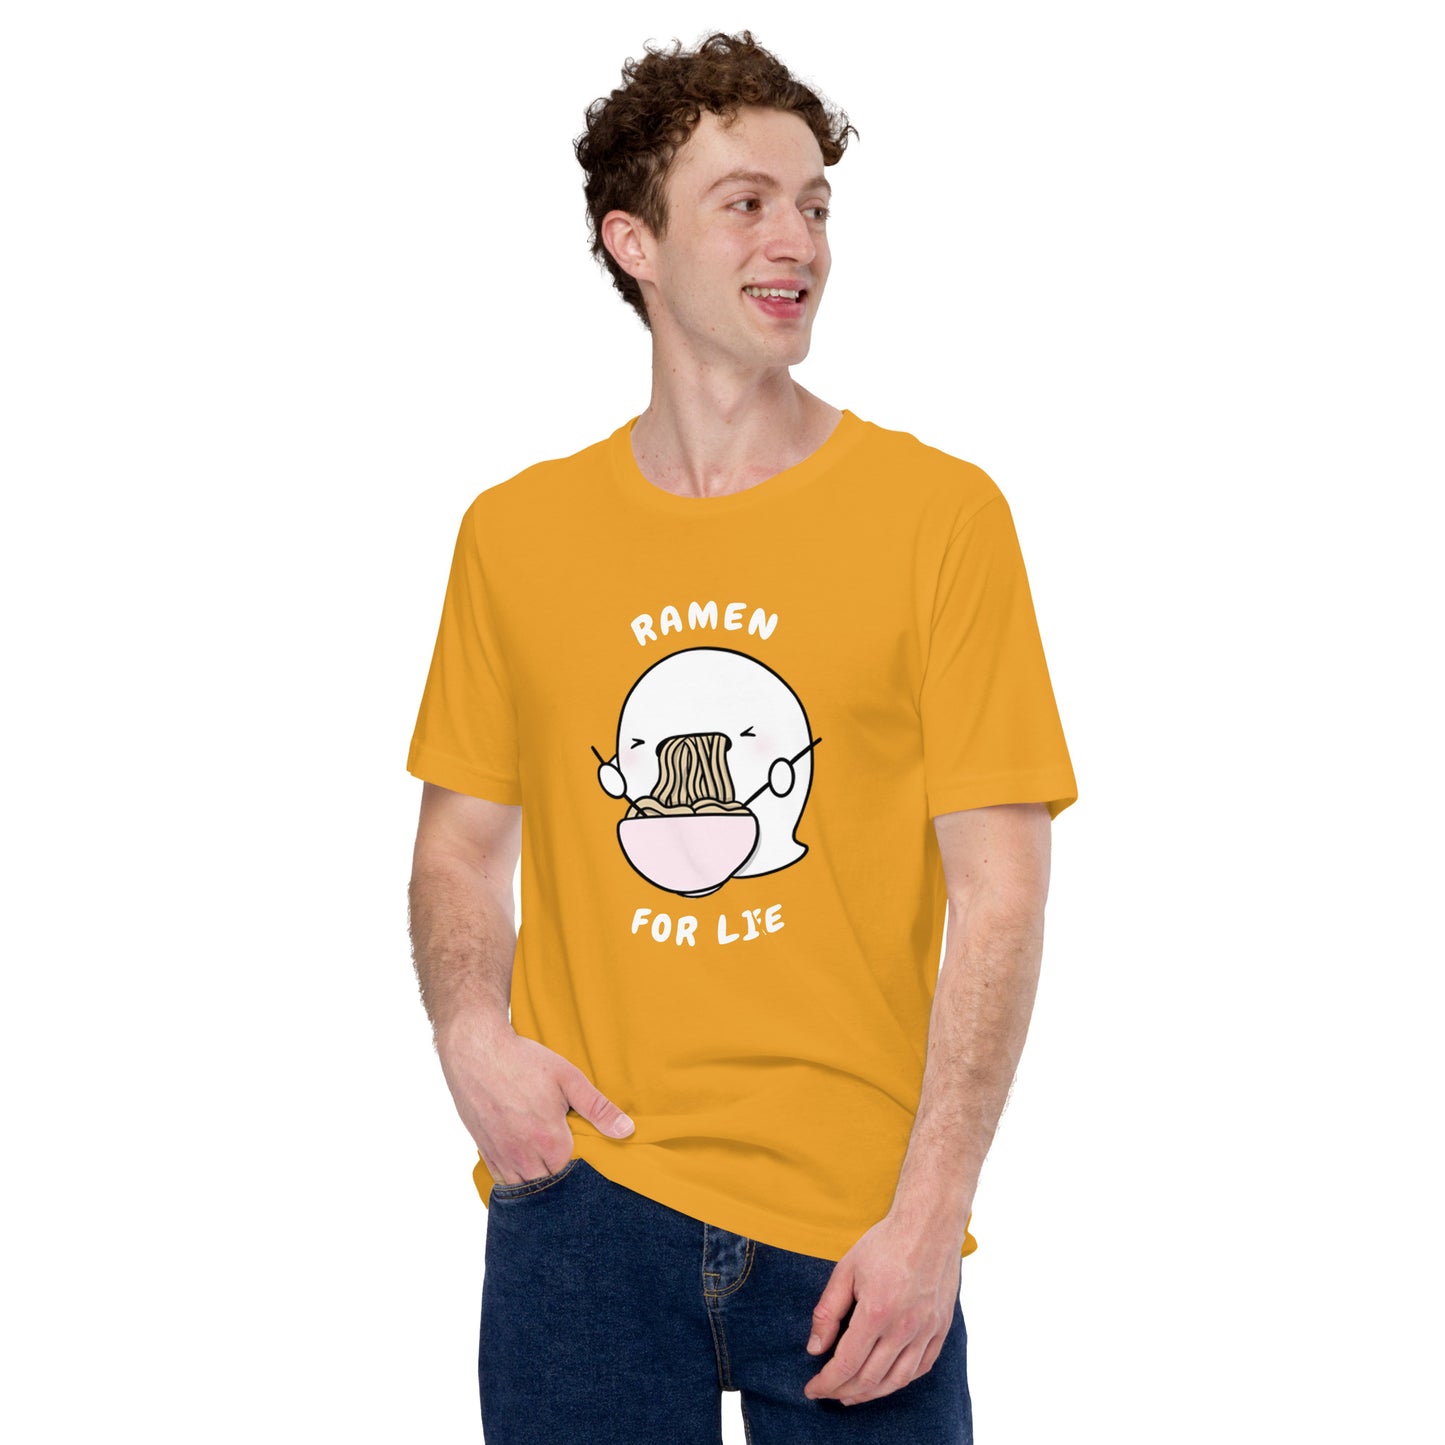 Ramen for life - Unisex t-shirt